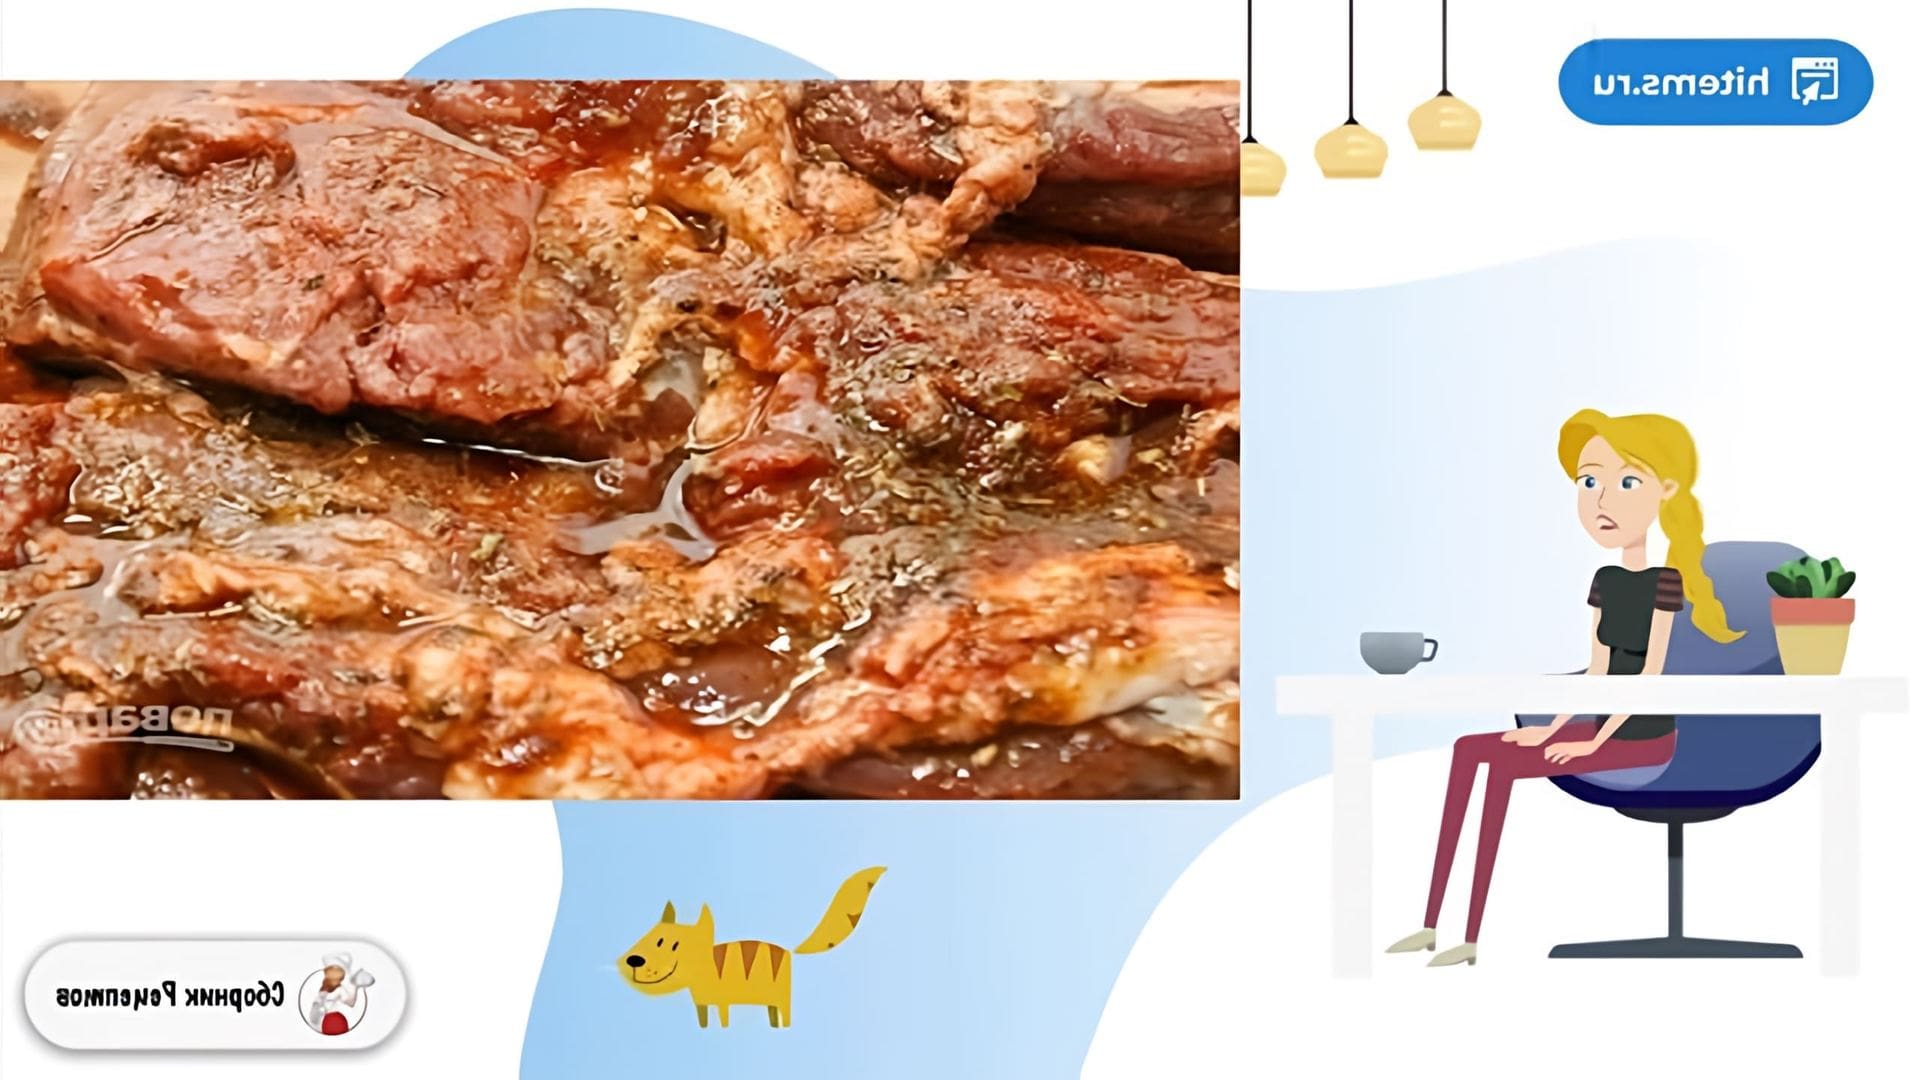 В этом видео демонстрируется рецепт приготовления баранины запеченной со специями